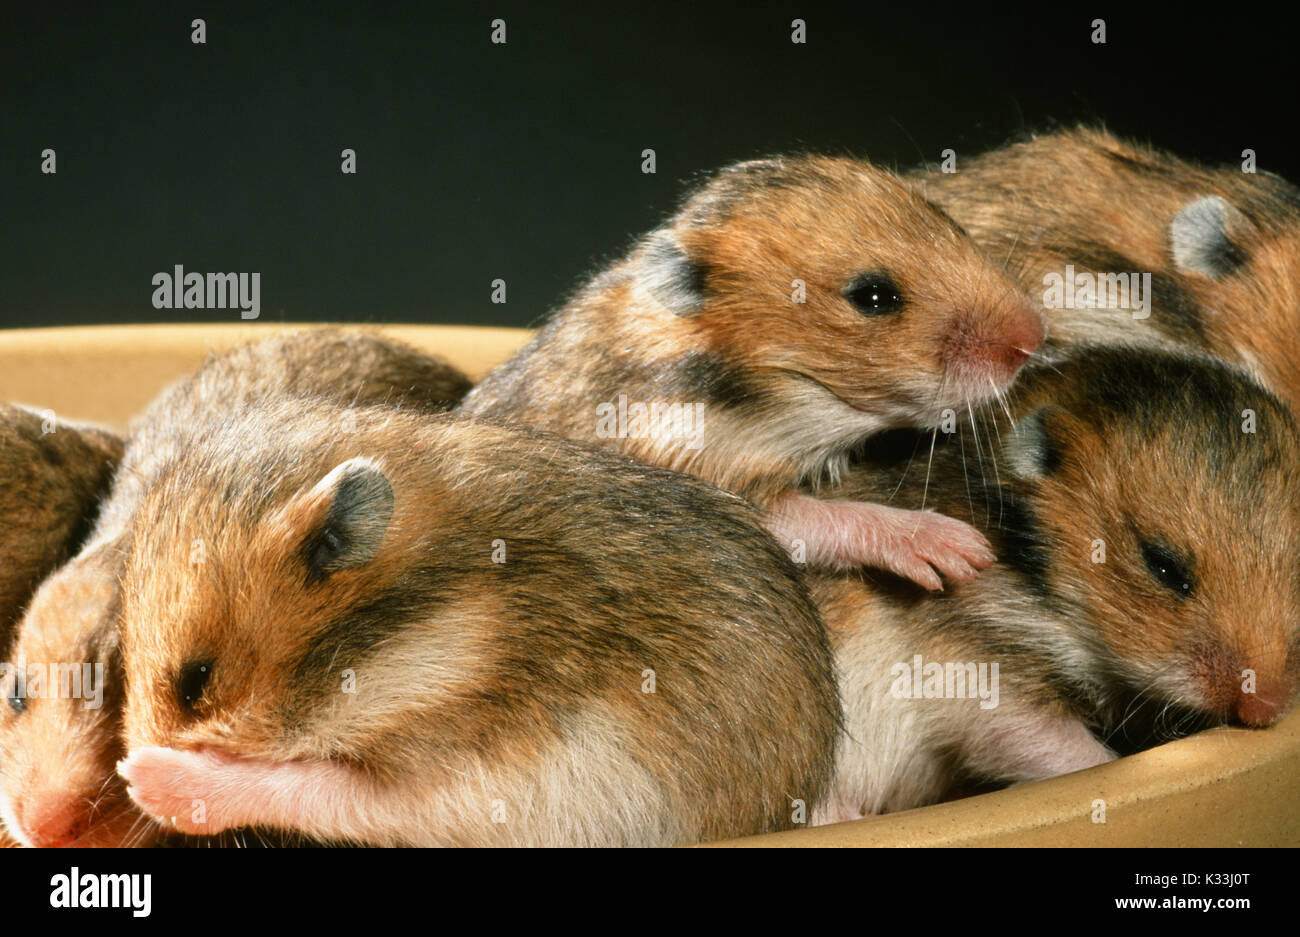 Golden oder Syrischen Hamster Mesocricetus auratus. Mobile Junge, Augen gerade öffnen bei 15 Tage alten, in einer Futterschüssel. Stockfoto